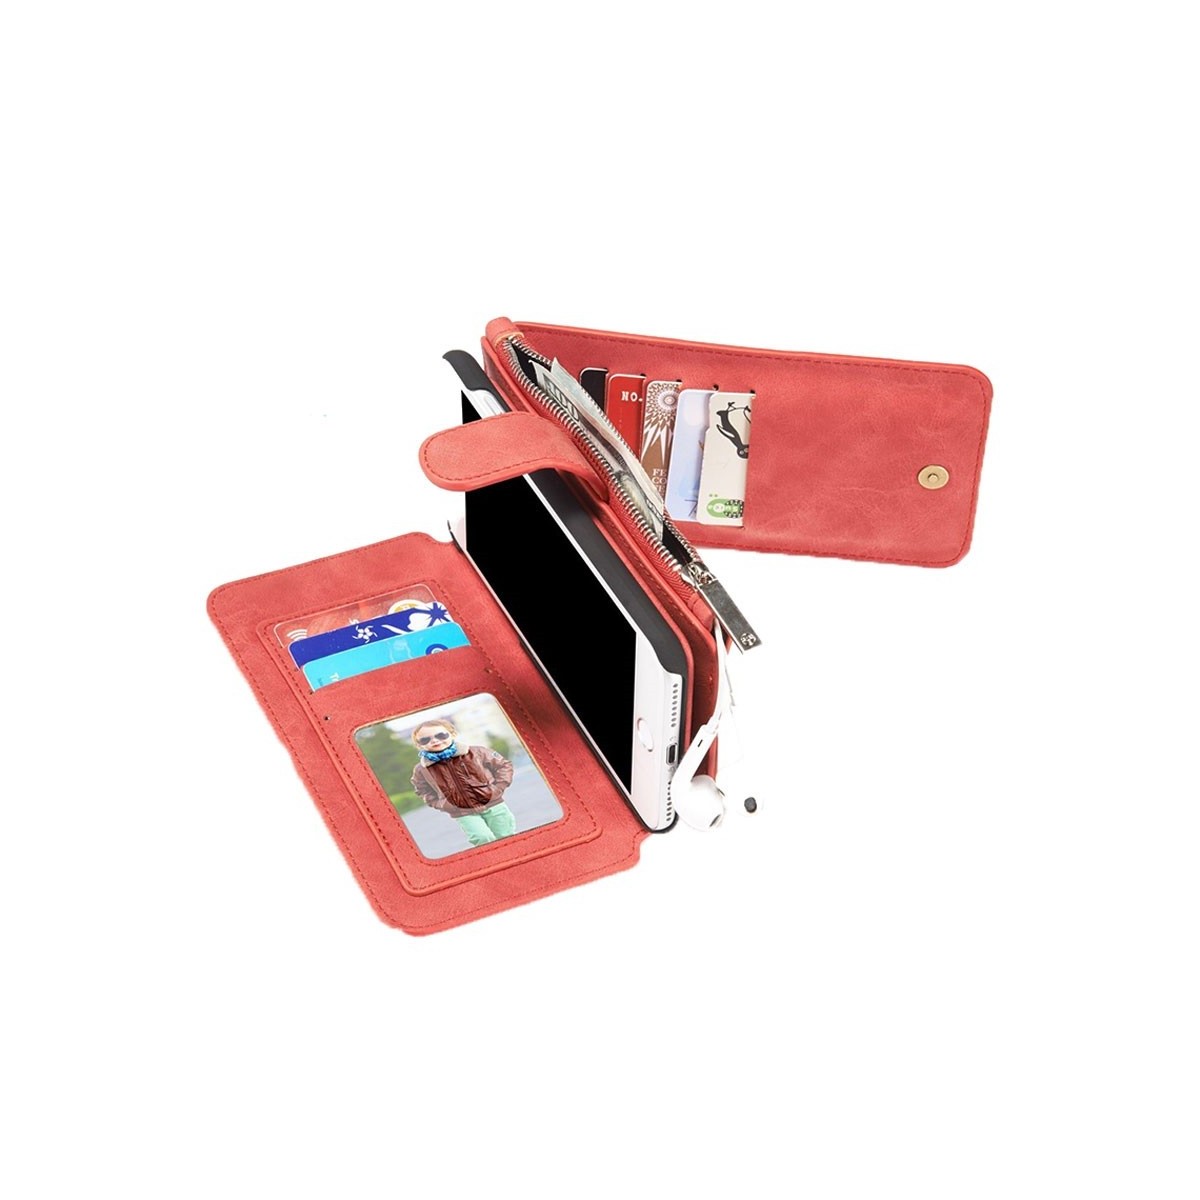 Etui Iphone 7 Plus Portefeuille multifonctions Rouge - CaseMe